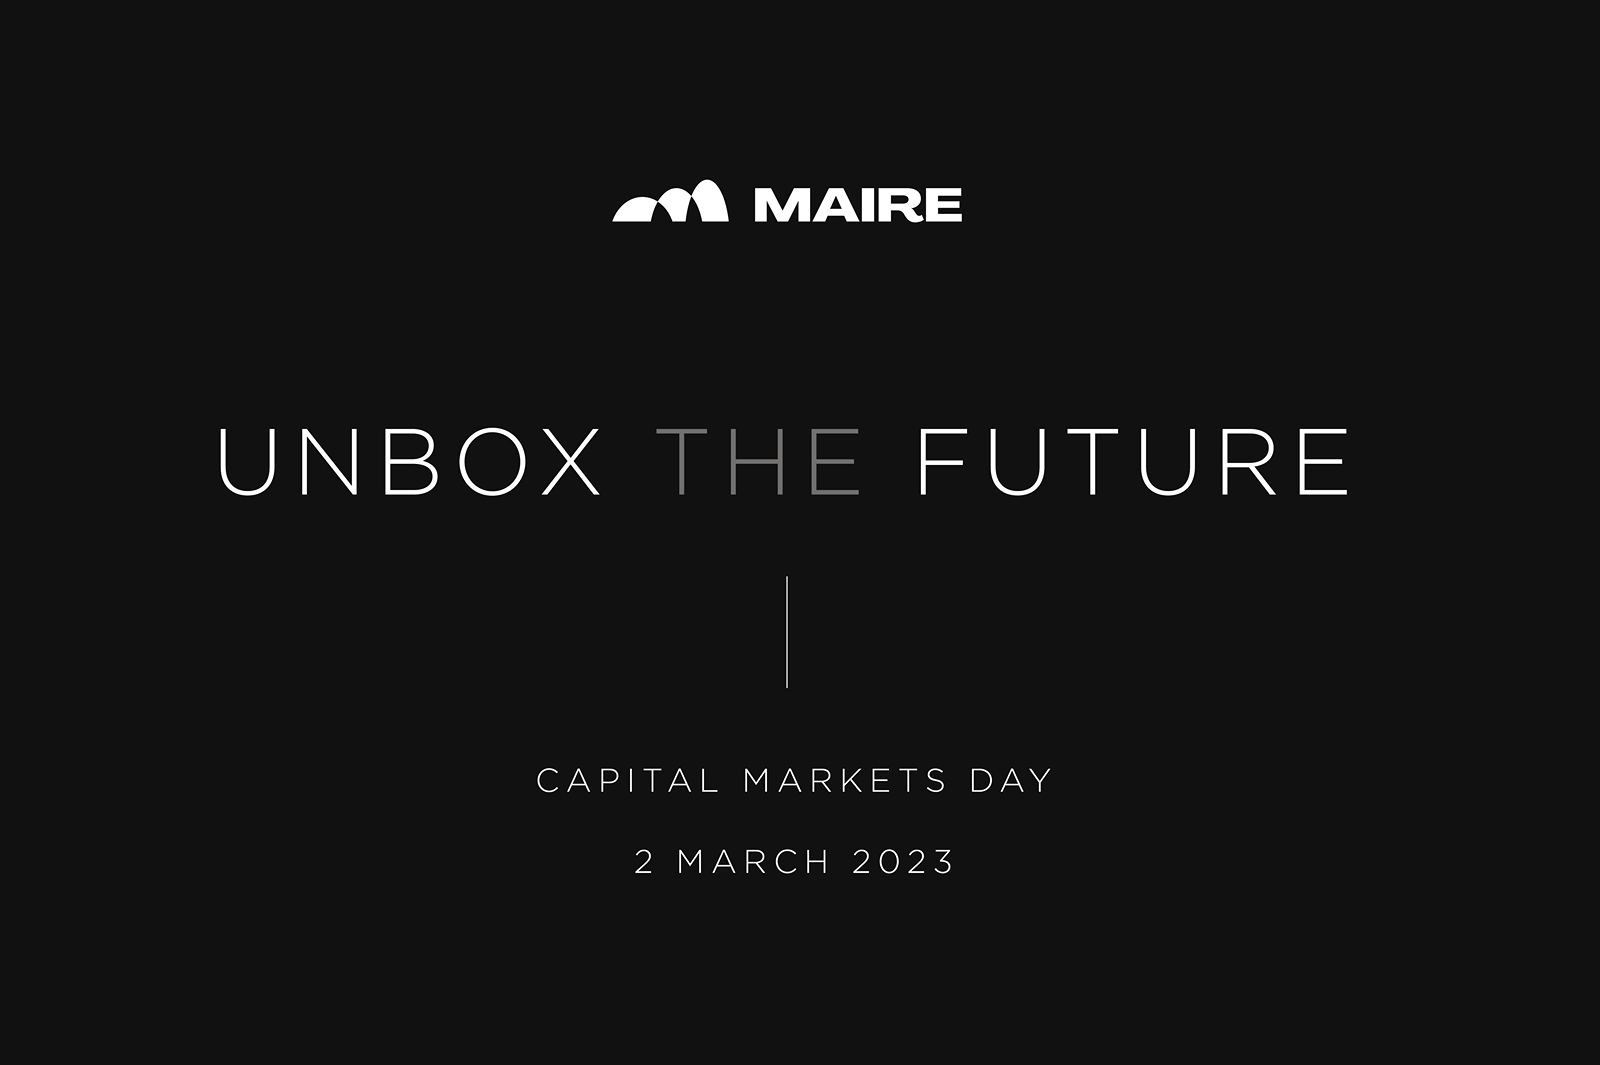 Maire Tecnimont announces its 2023-2032 Strategic Plan "Unbox the Future"